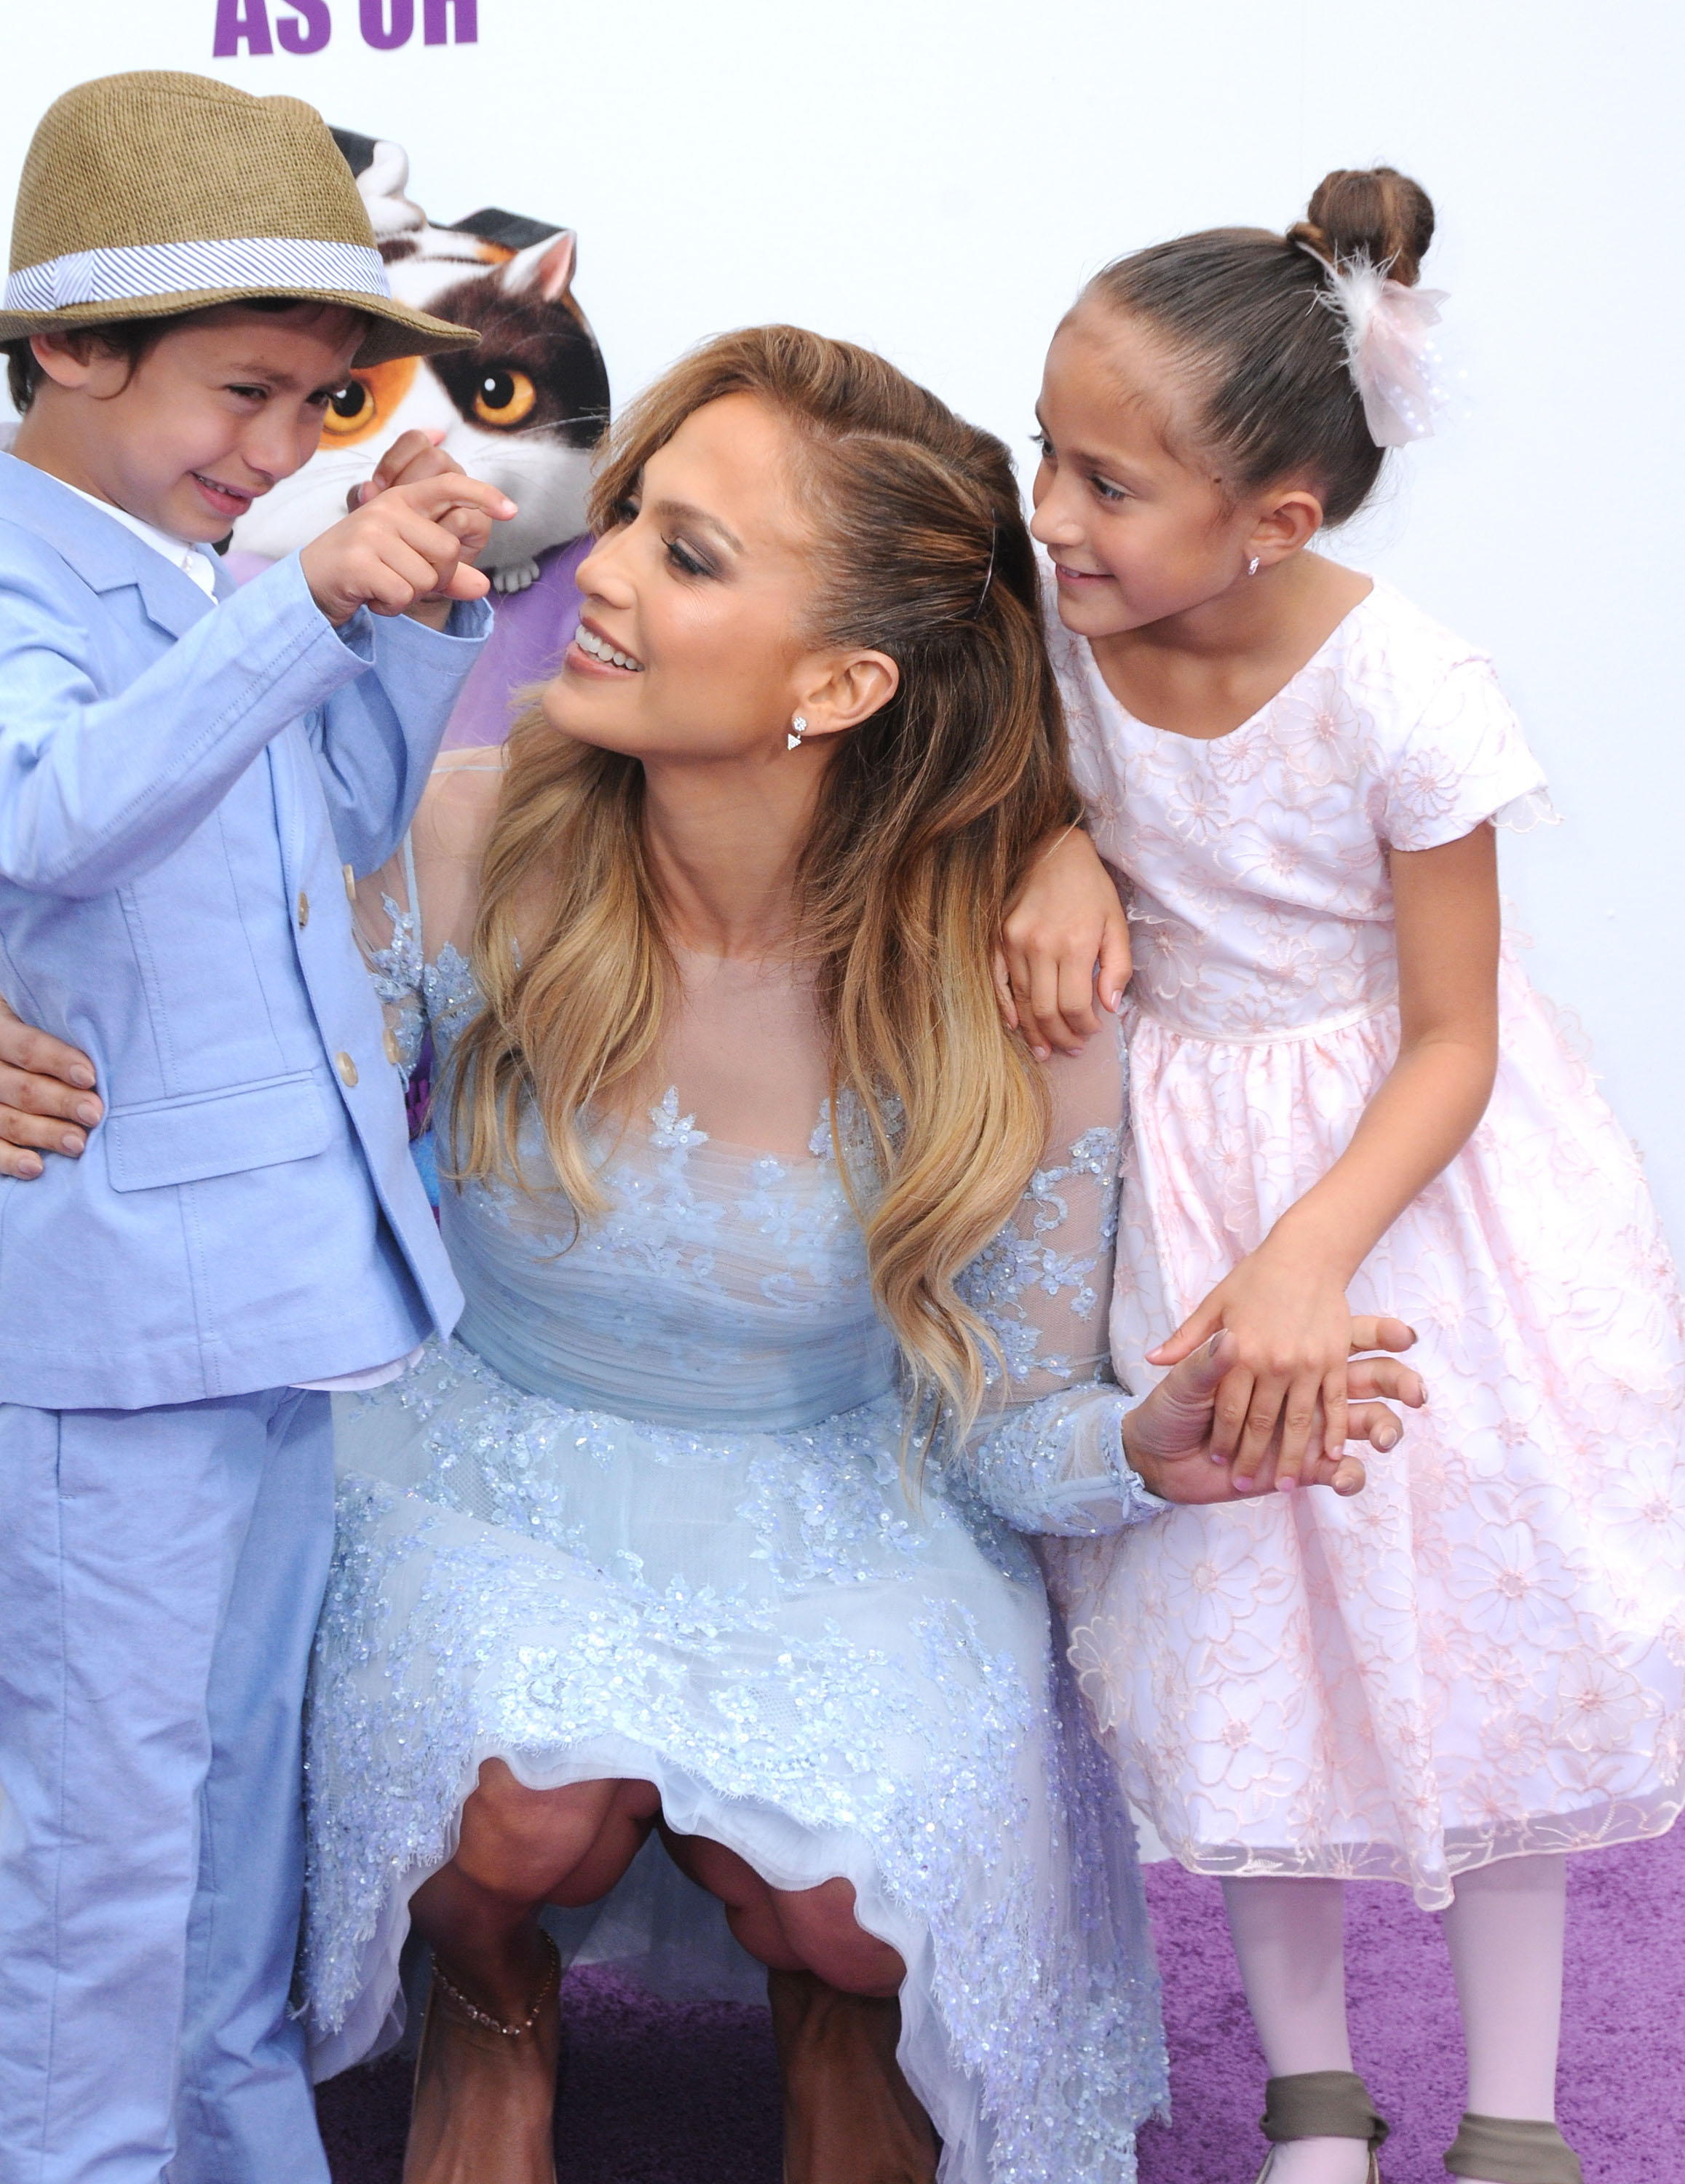 Jennifer Lopez, accompagnée de son fils Maximillian David Muniz et de sa fille Emme Maribel Muniz, assiste à la première du film "Home" de Twentieth Century Fox et Dreamworks Animation, le 22 mars 2015, à Westwood, en Californie | Source : Getty Images